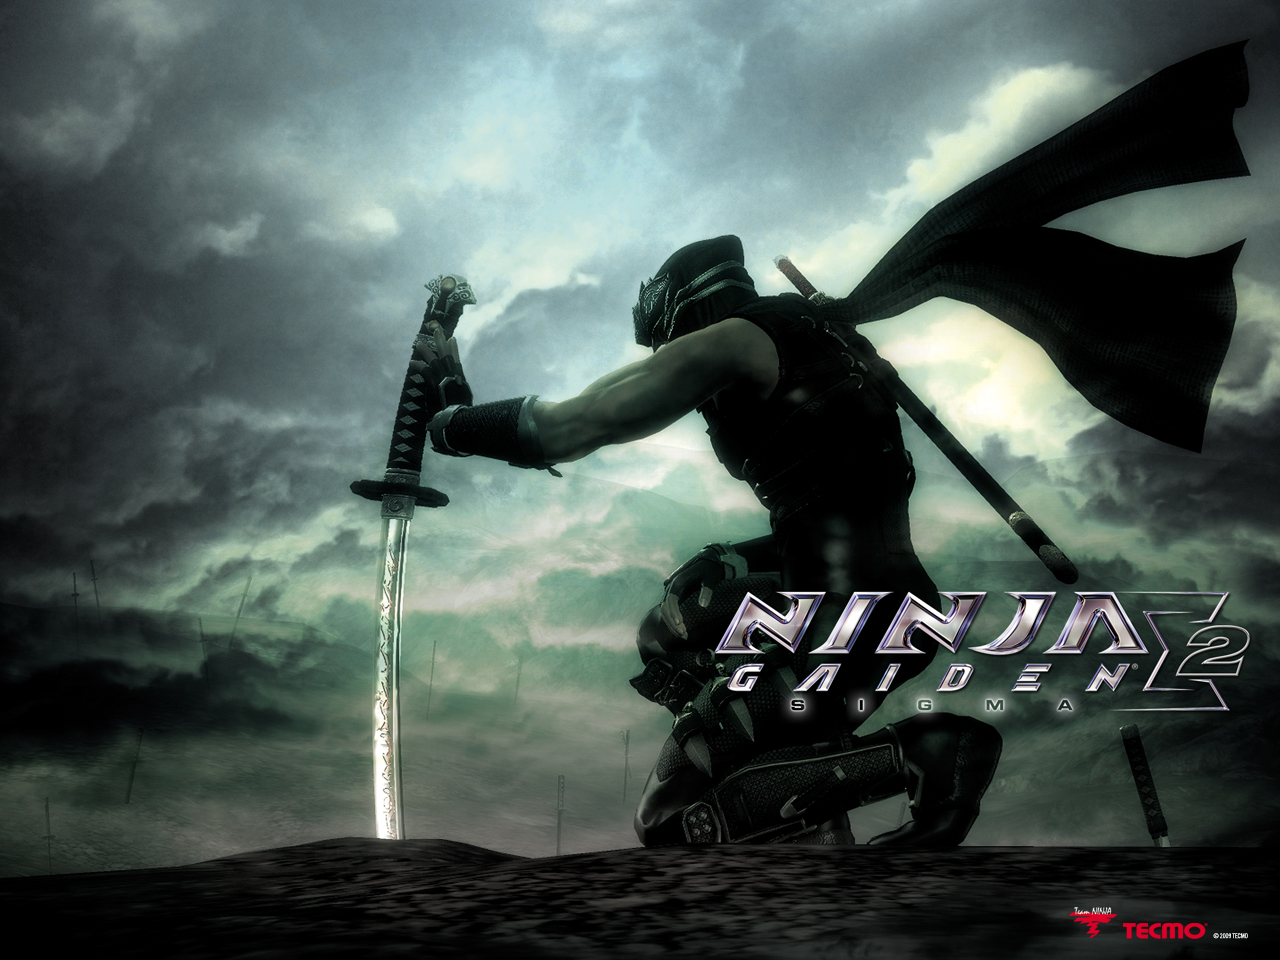 Wallpaper Ninja Gaiden Sigma Ps3 Game For Desktop